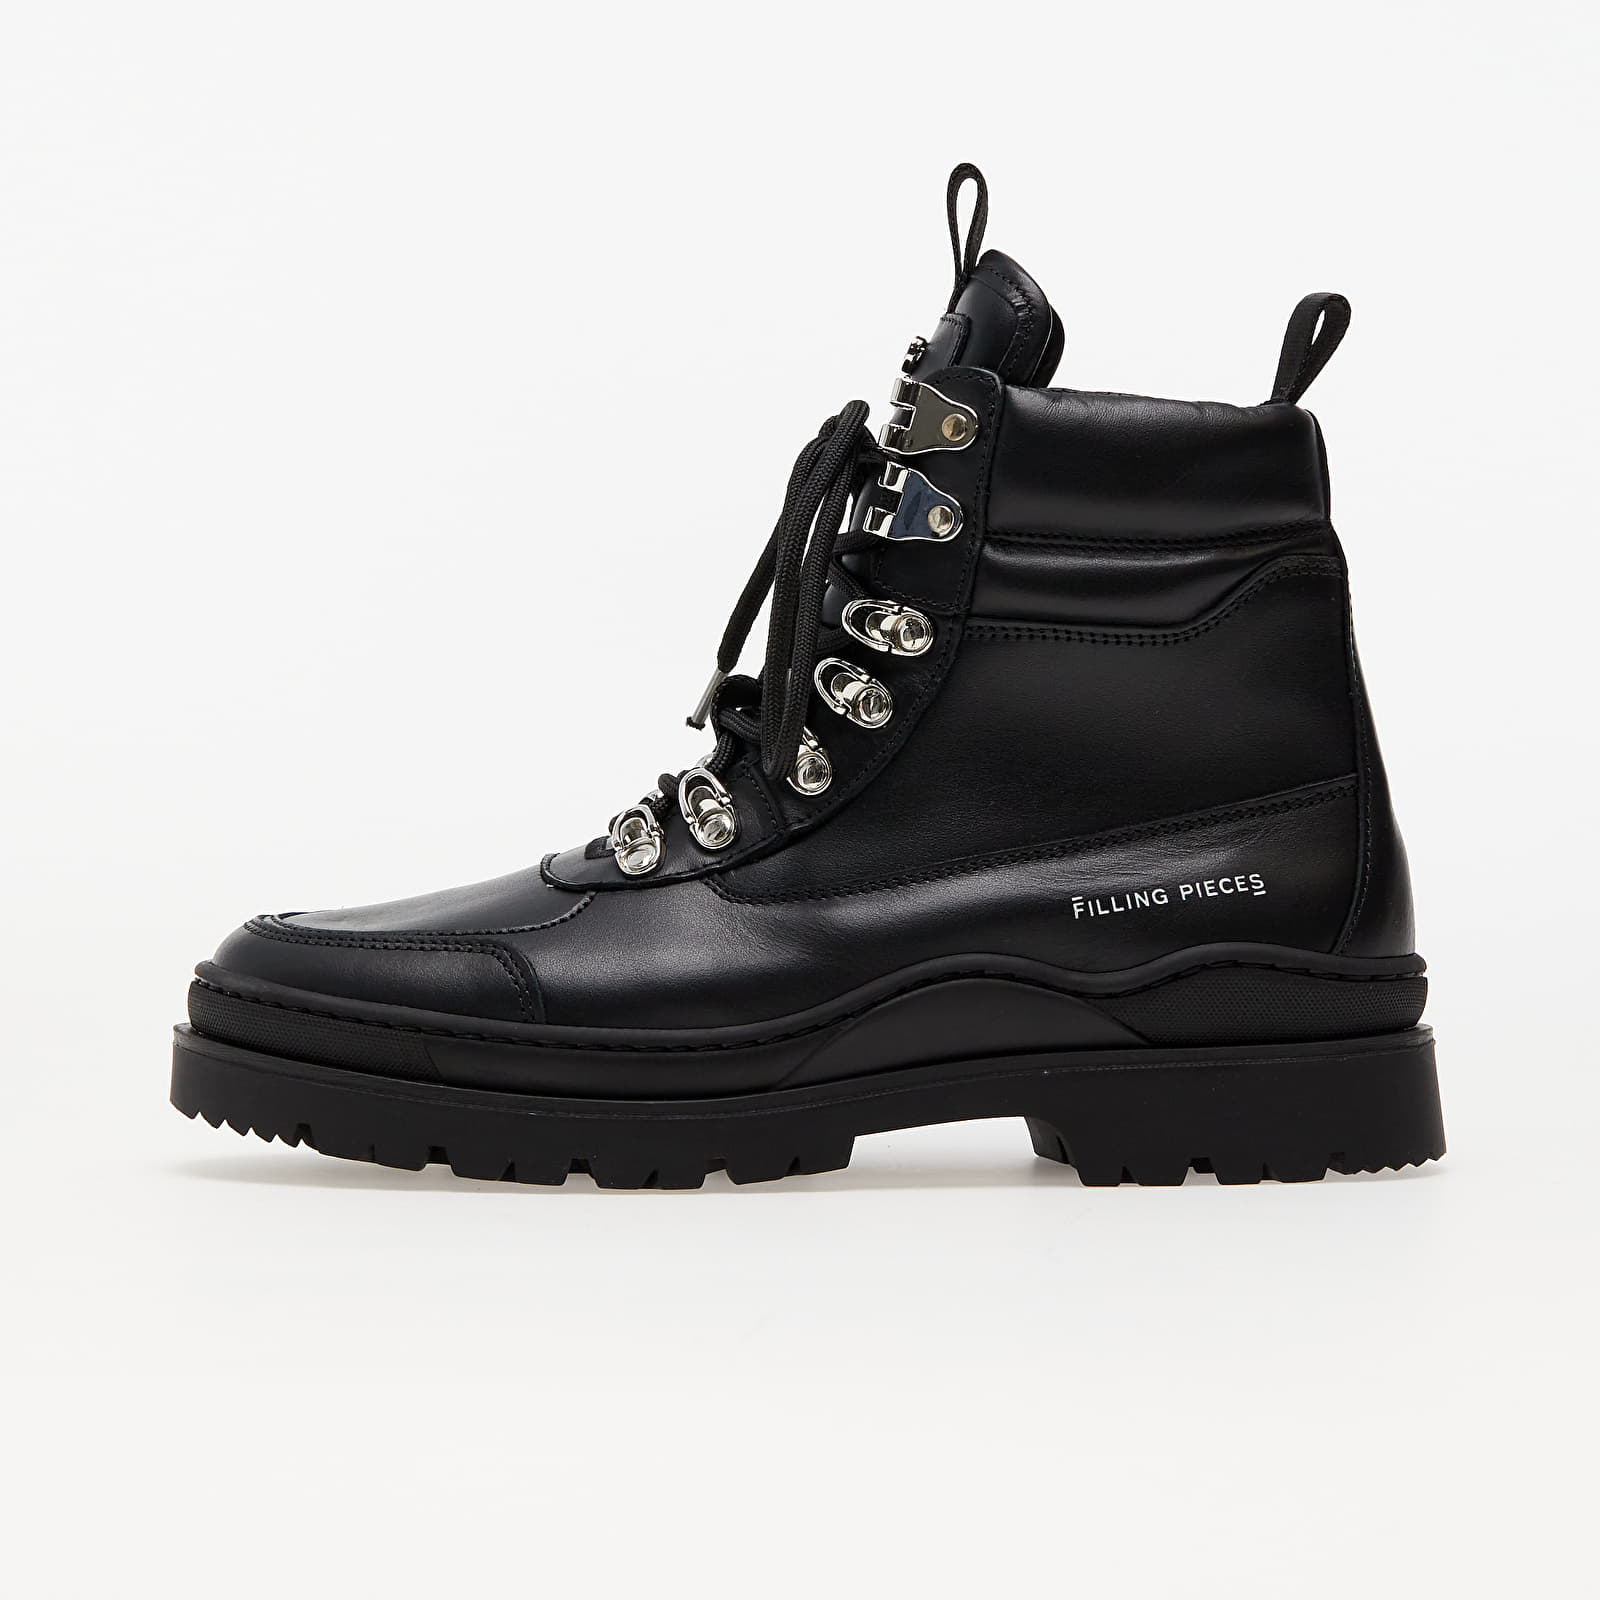 Încălțăminte și sneakerși pentru bărbați Filling Pieces Mountain Boot Nappa Black